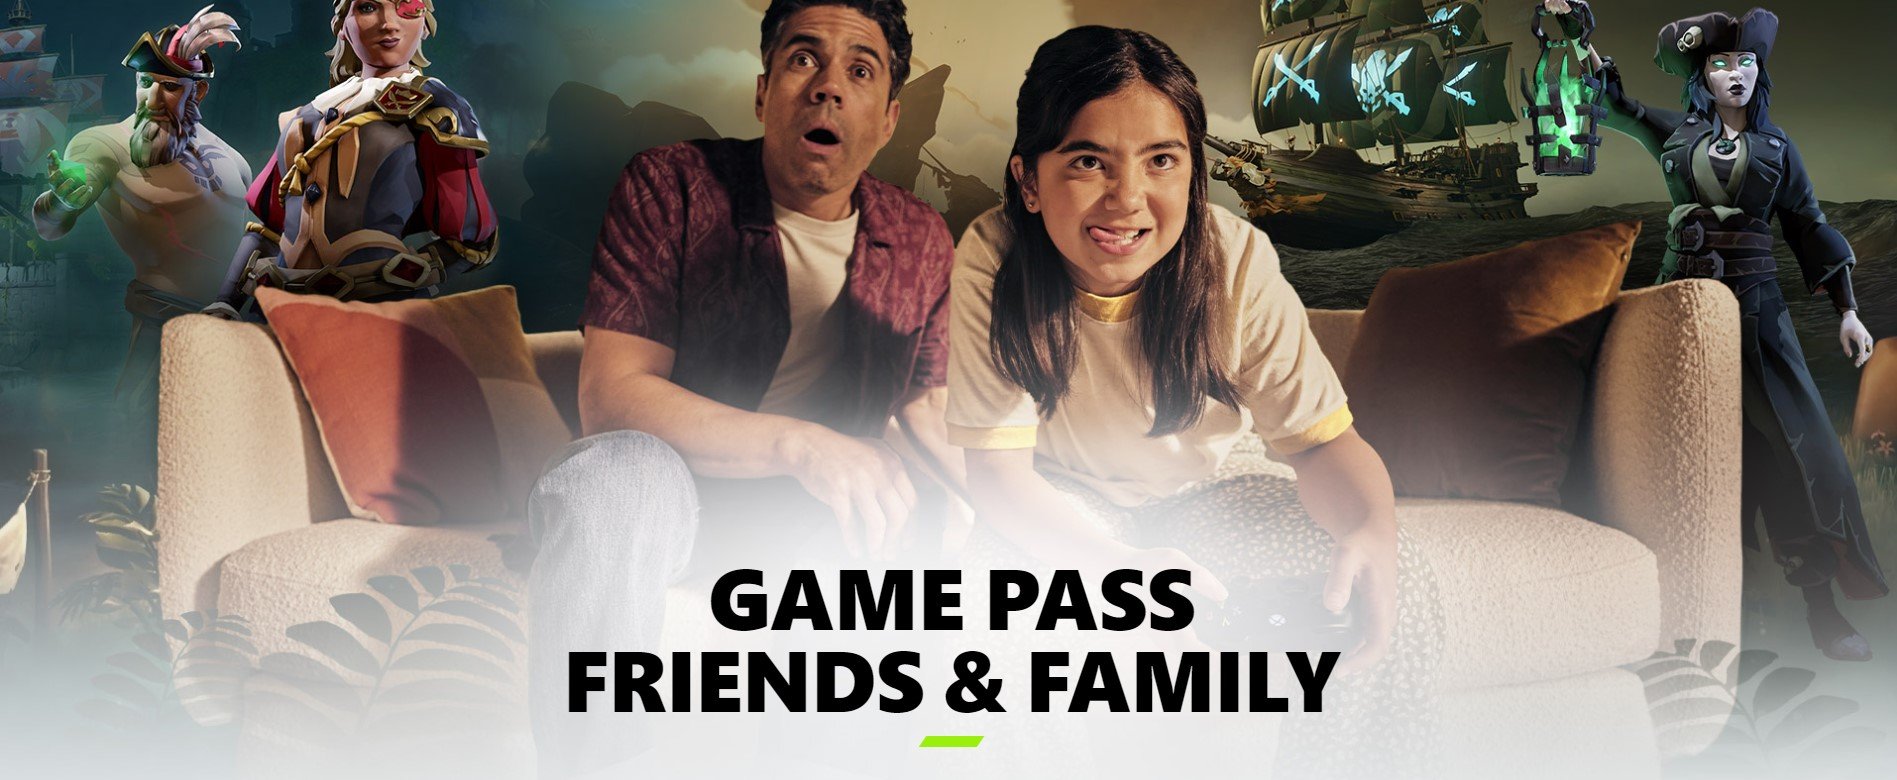 Xbox Game Pass - Friends & Family - grafika promująca nowy plan usługi (źródło: Microsoft)